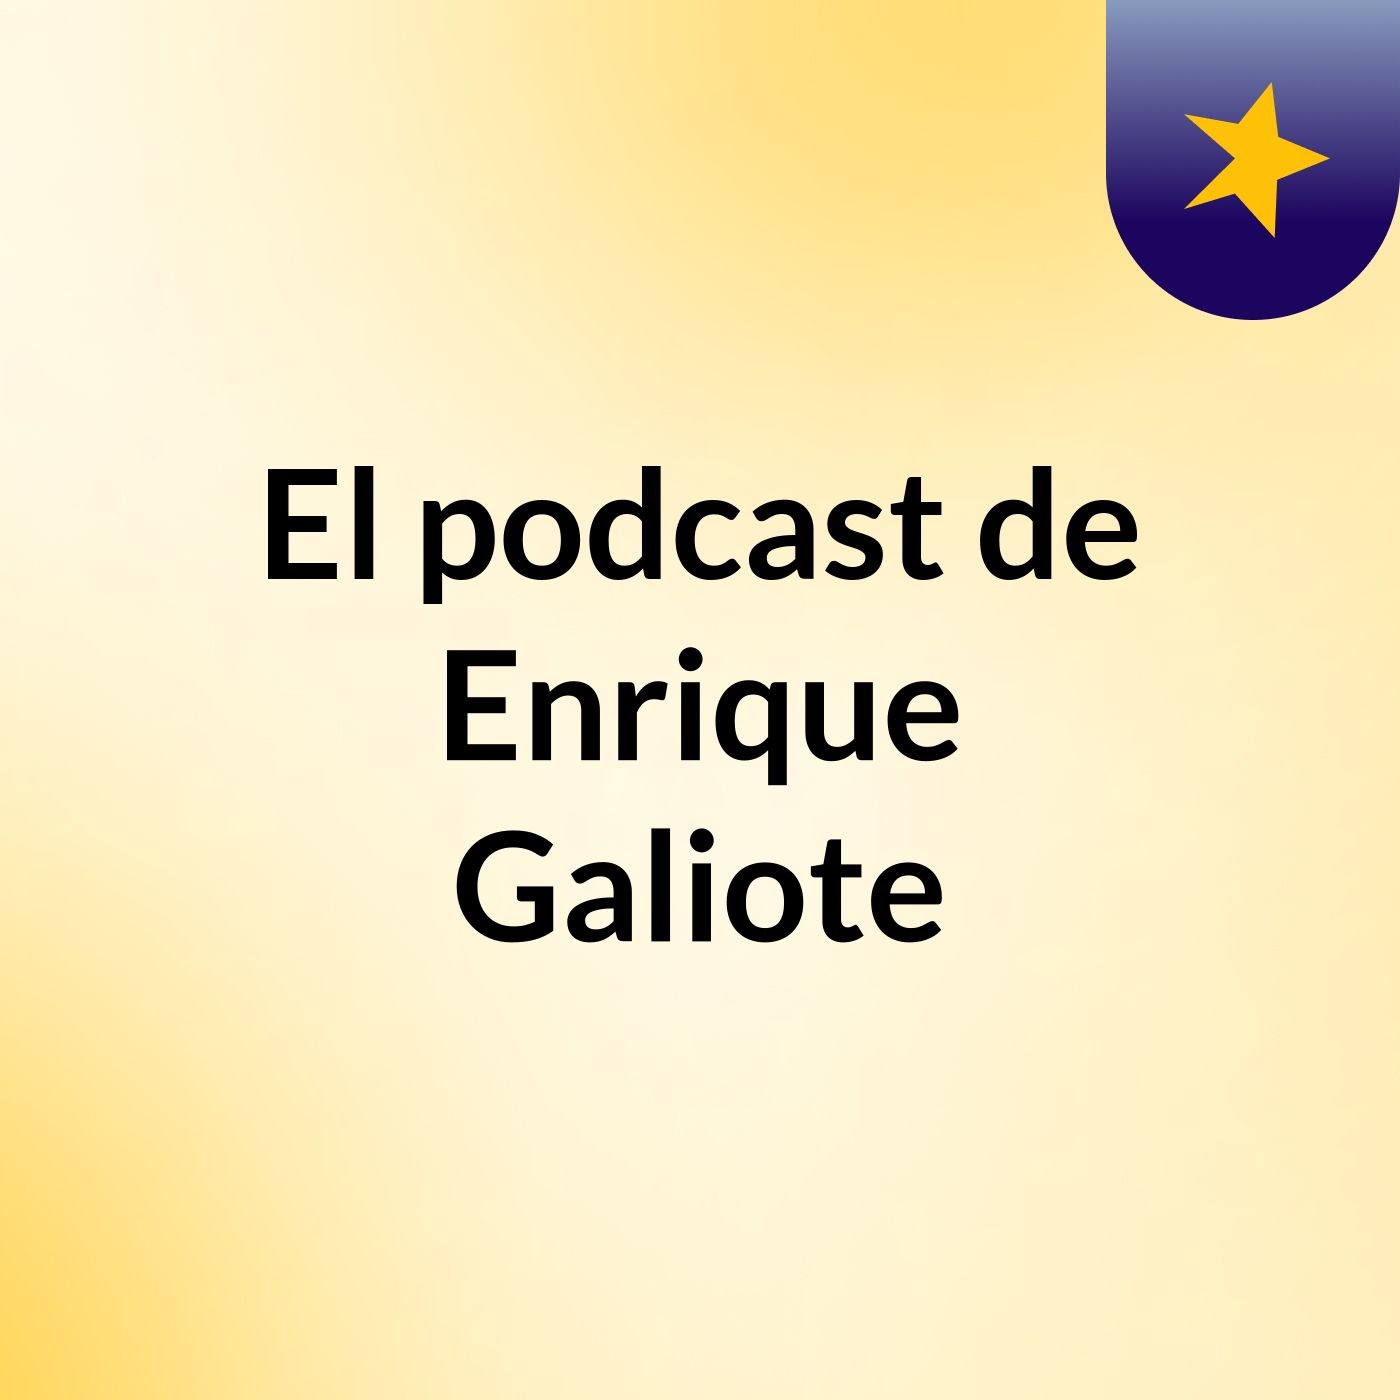 Episodio 2 - El podcast de Enrique Galiote